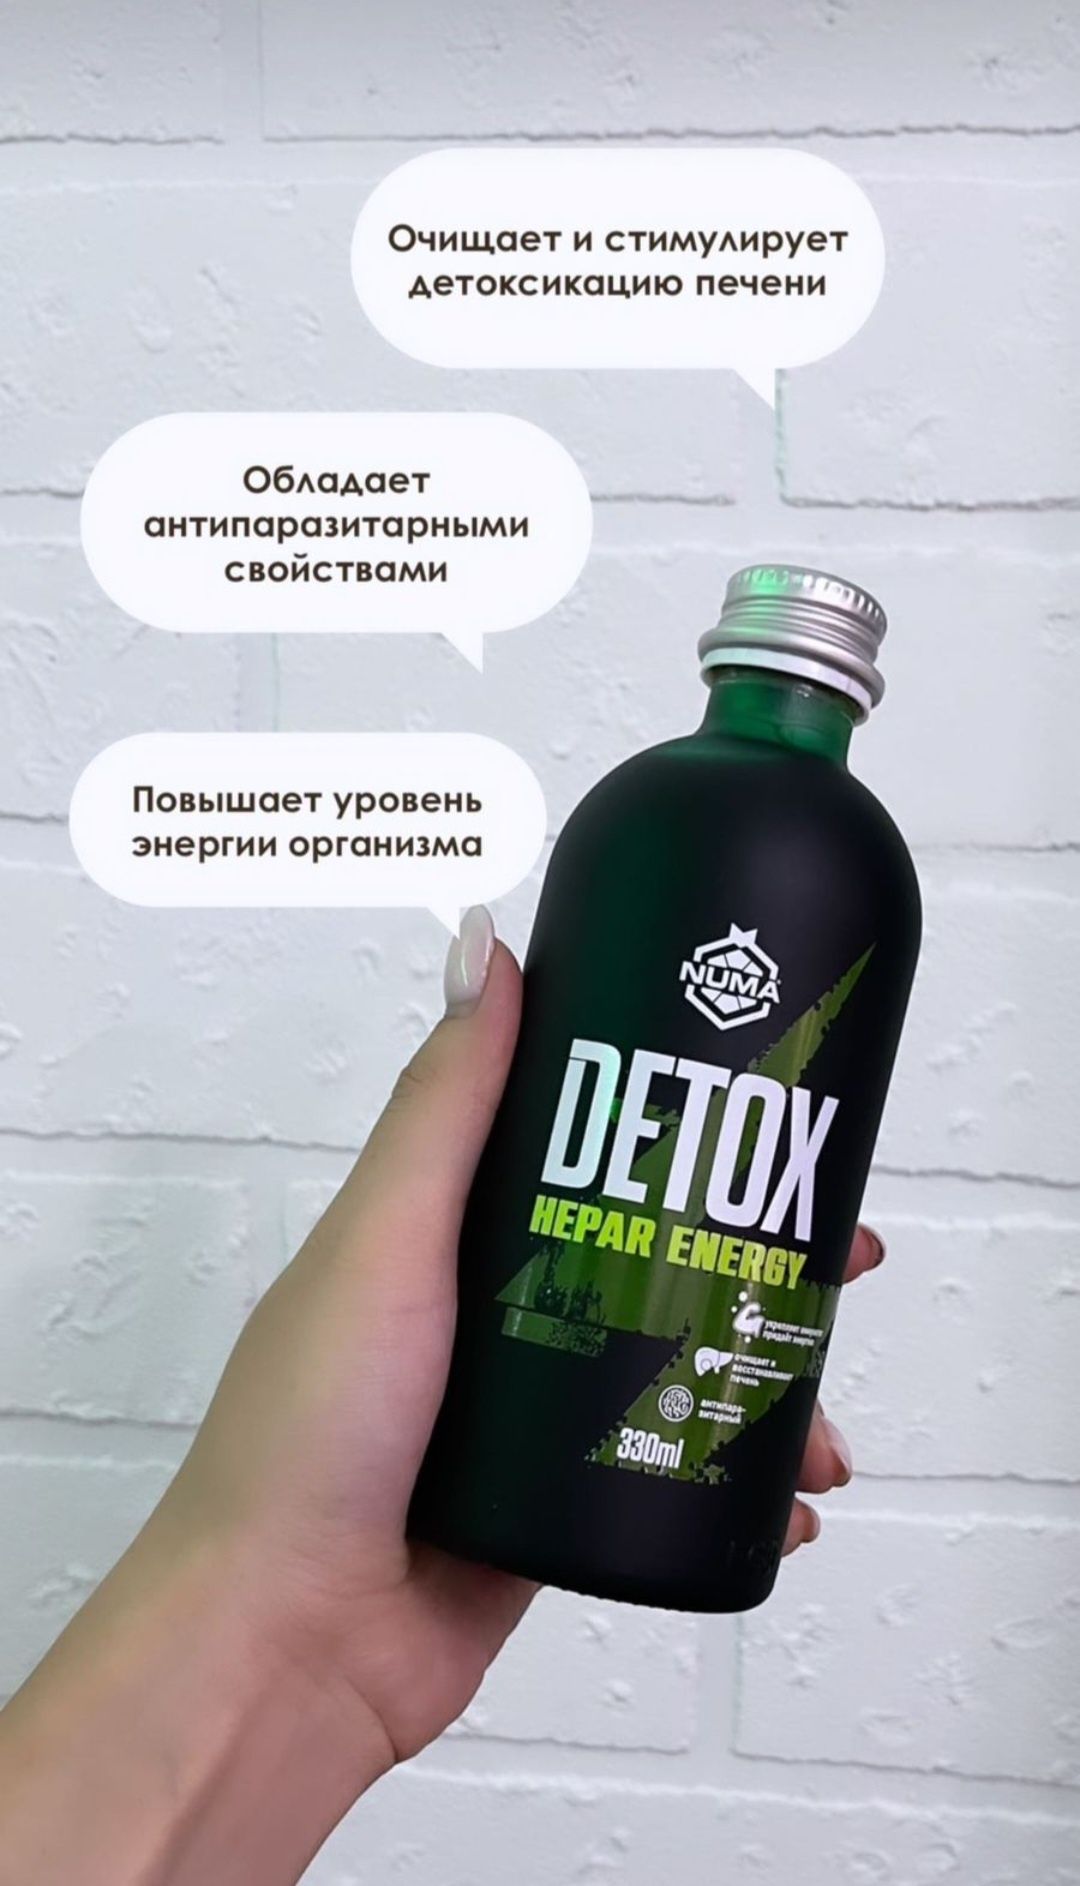 Detox/Hepar Energy/Детокс/Numa/Энергия//Премиум класса/очищение